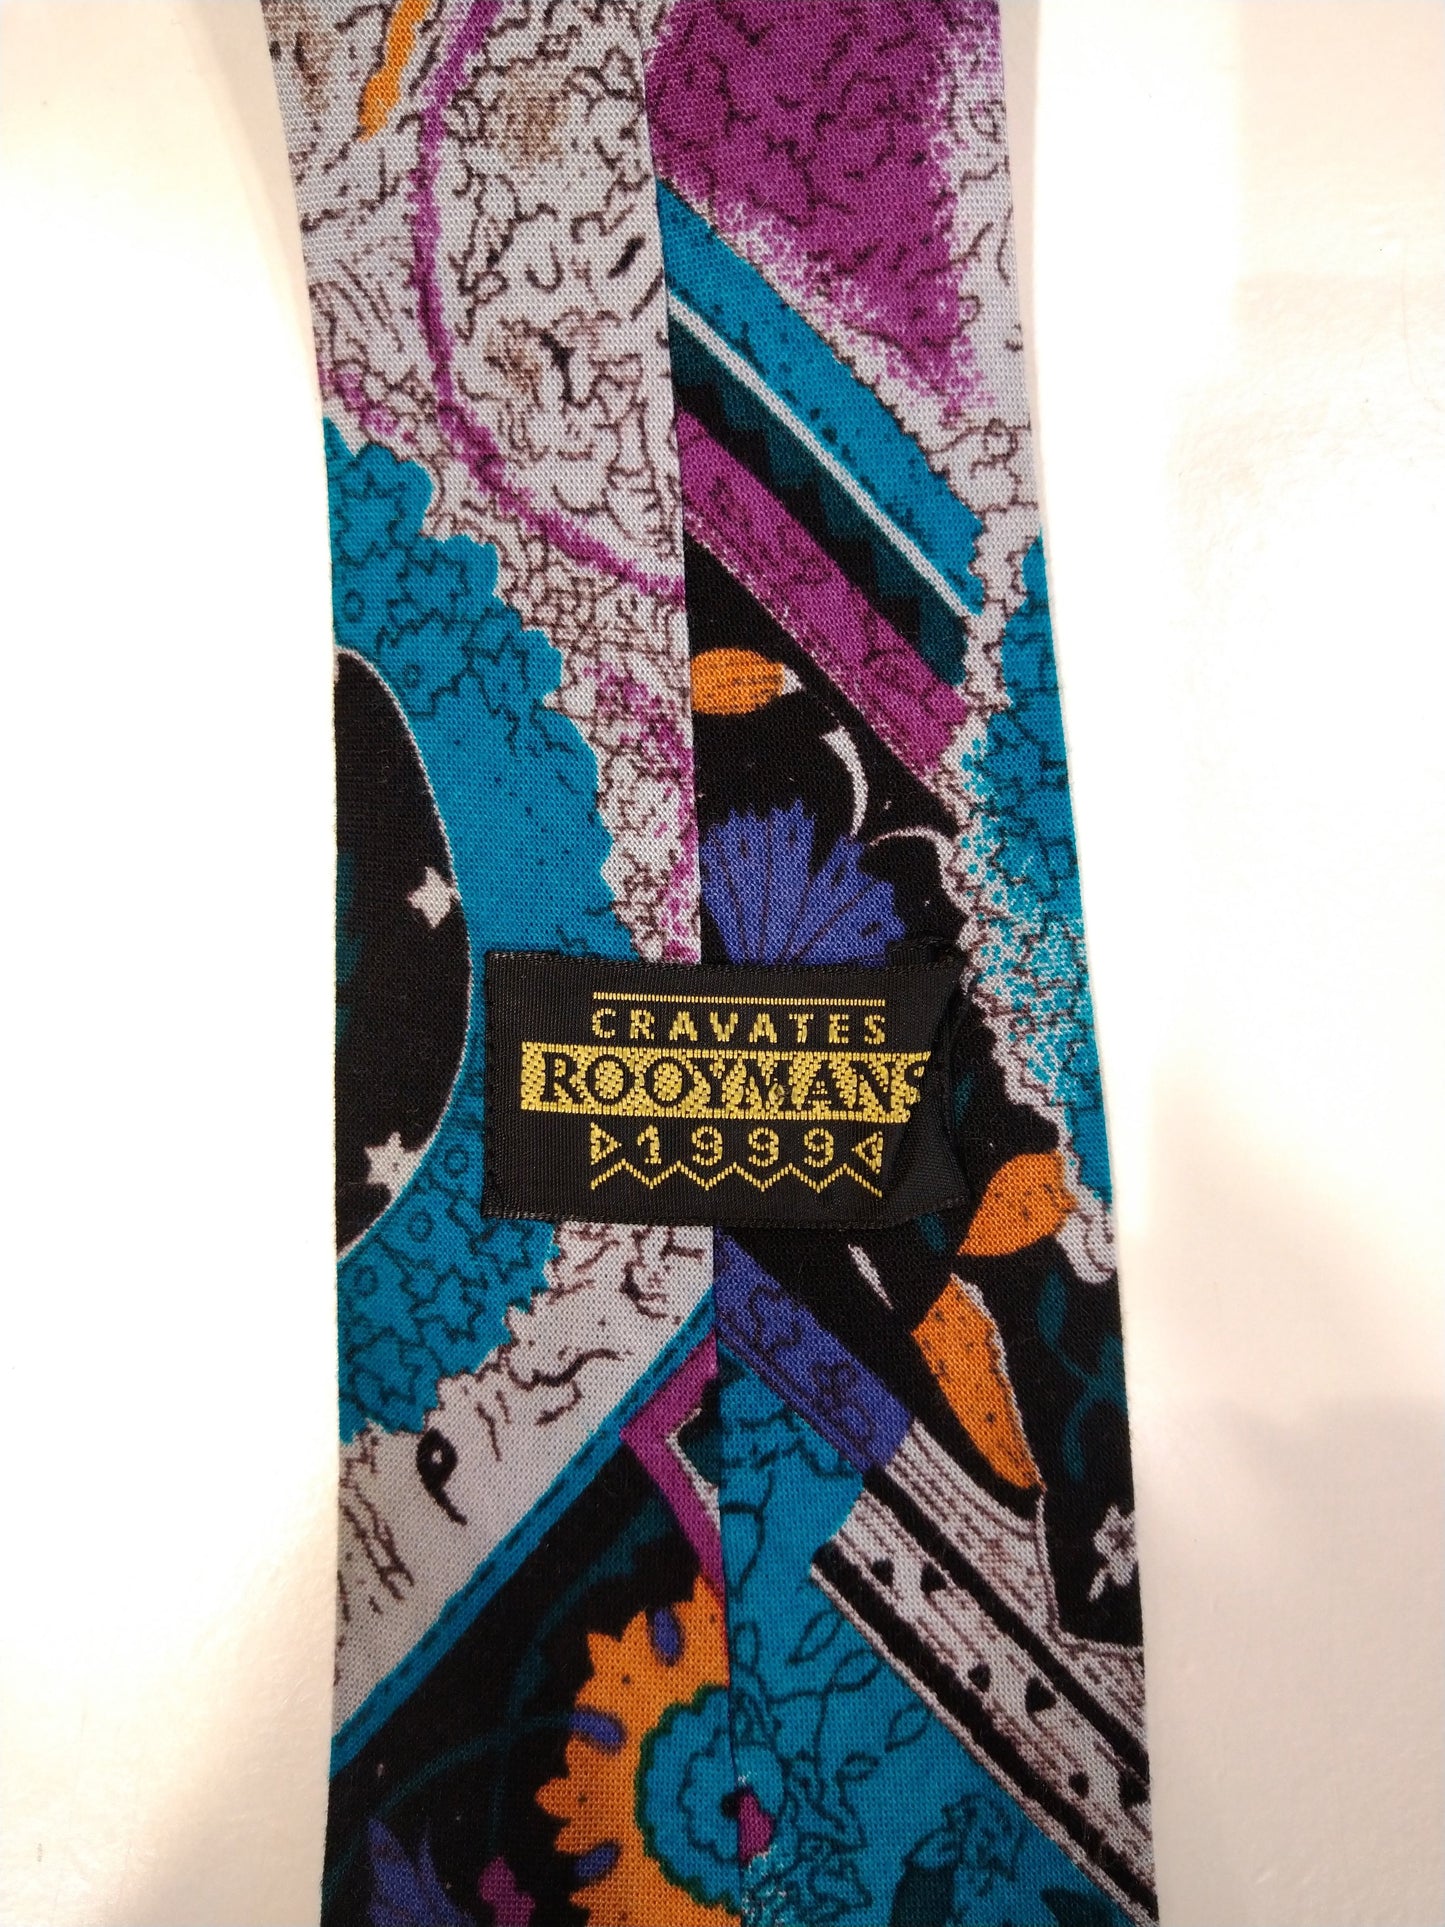 Cravata Rooymans corbata súper colorida.